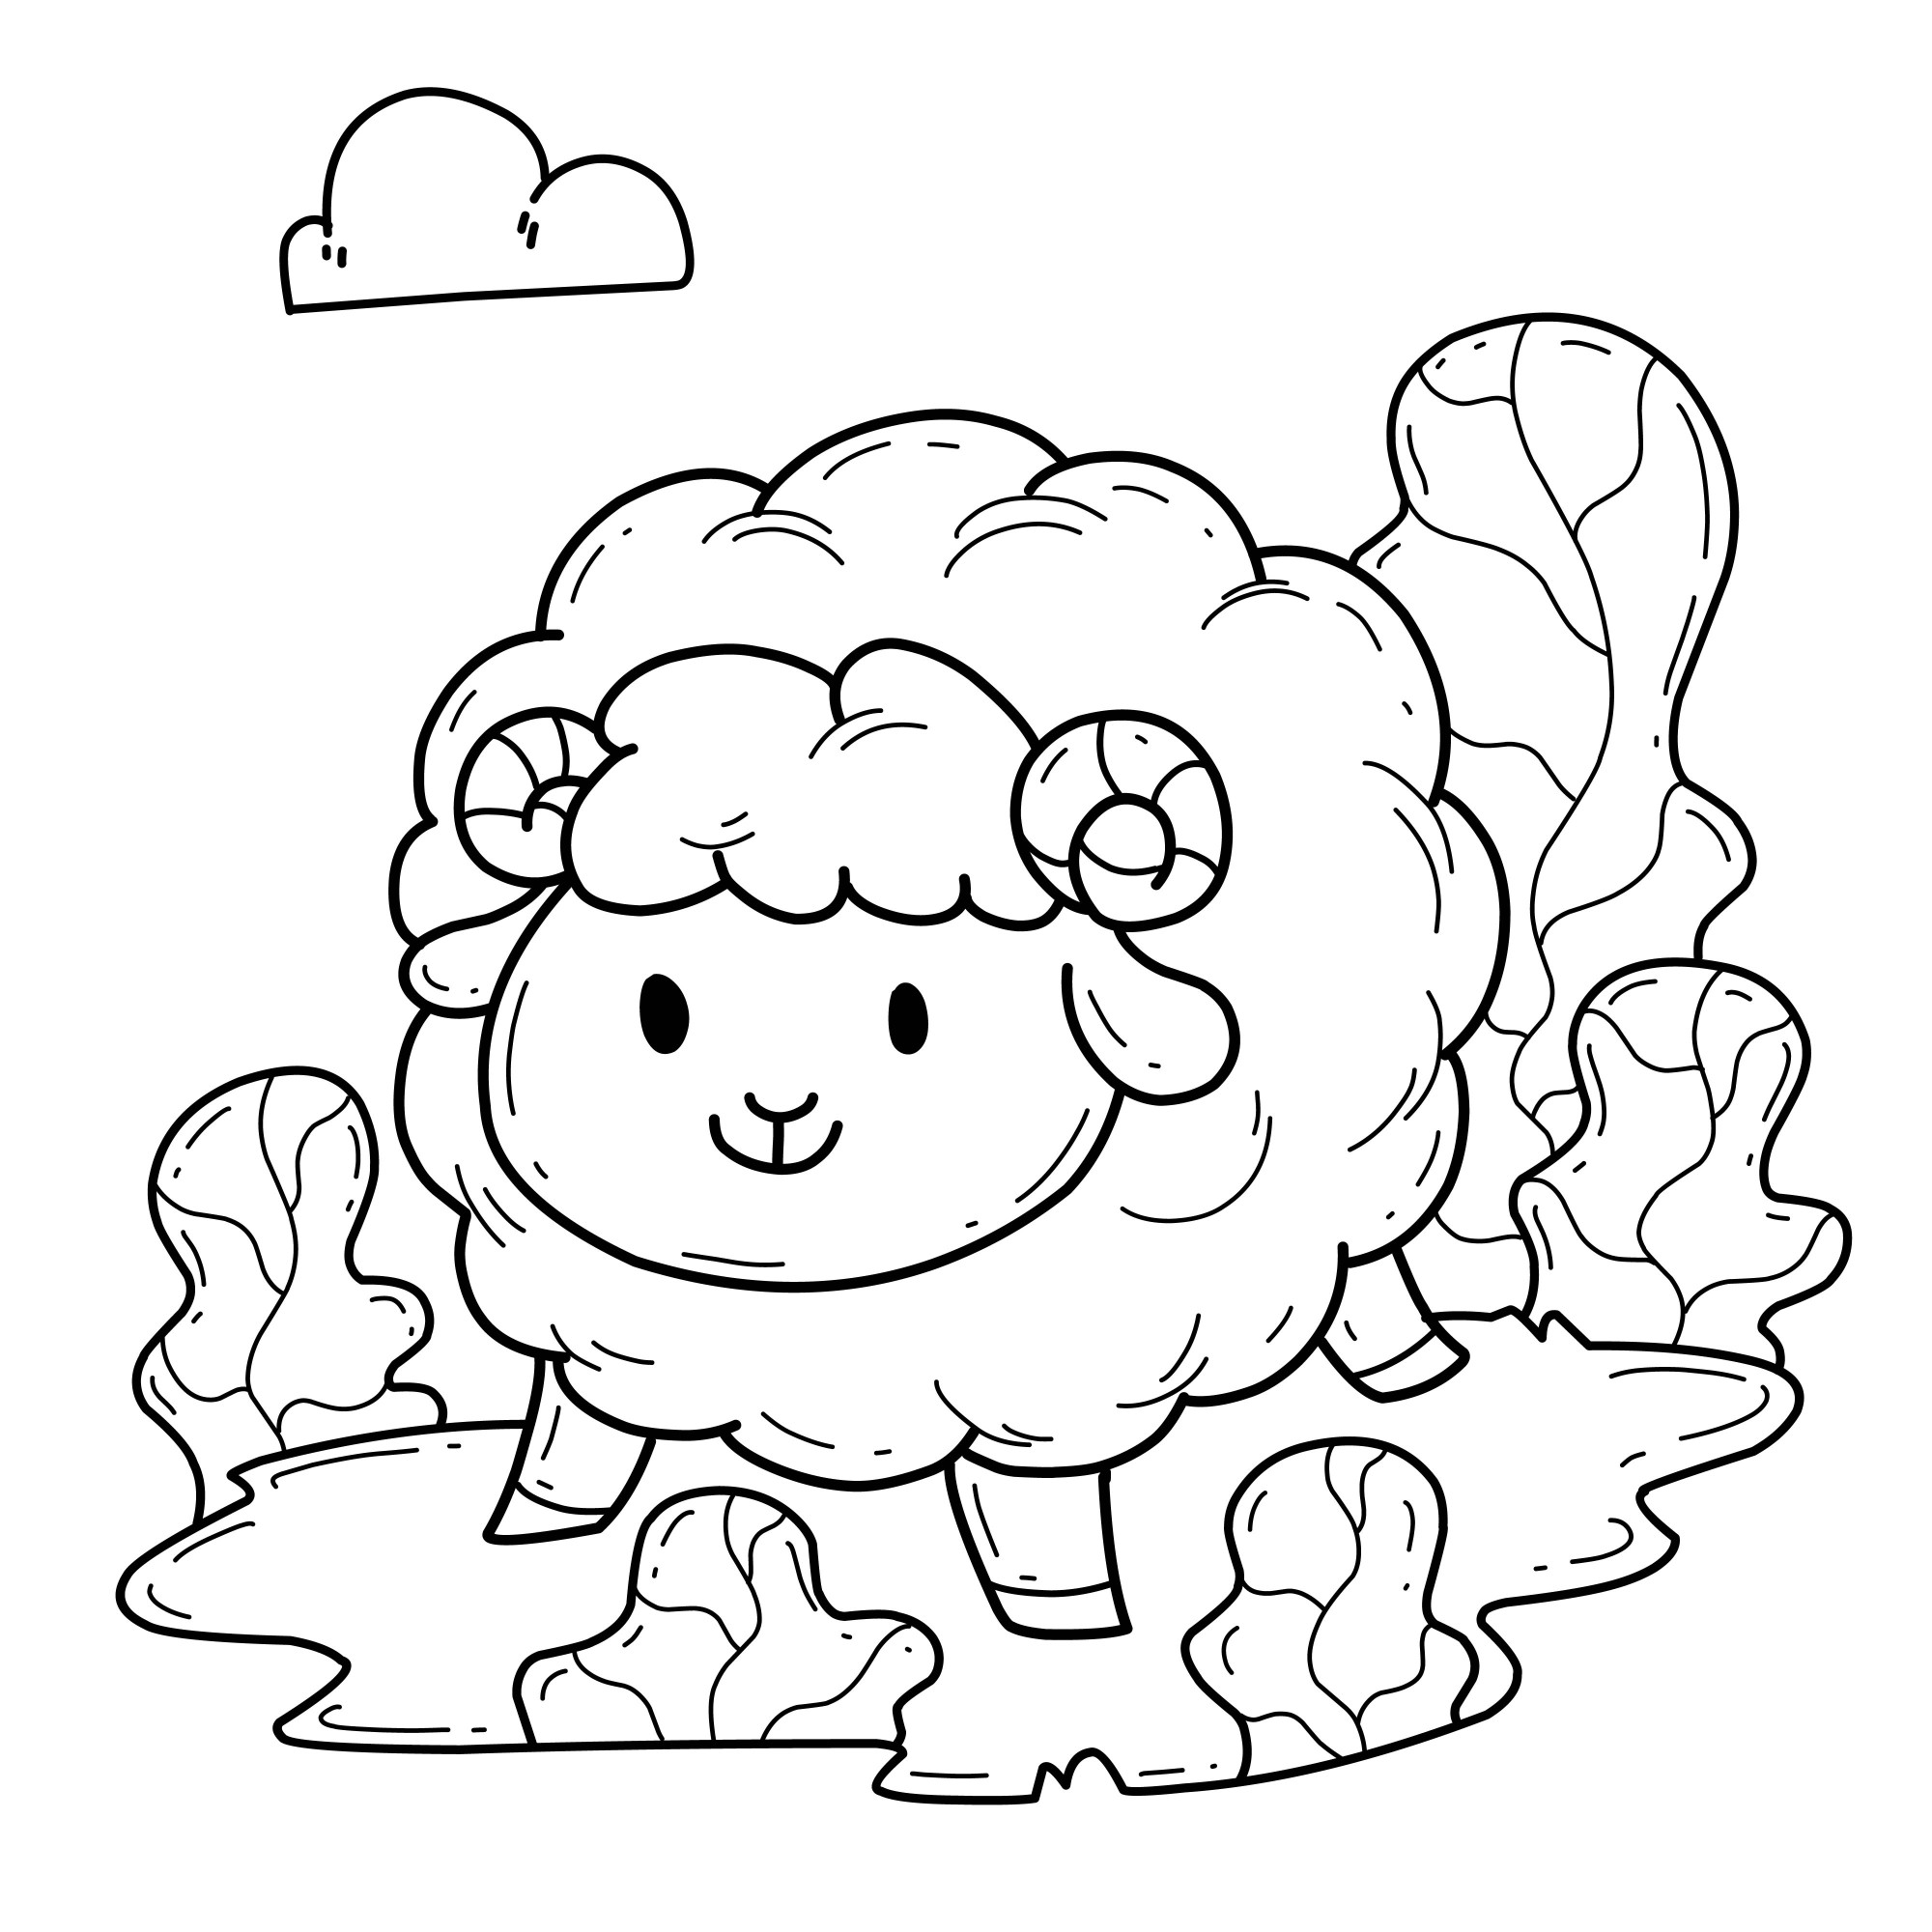 Раскраска для детей: пушистая упитанная овца в траве